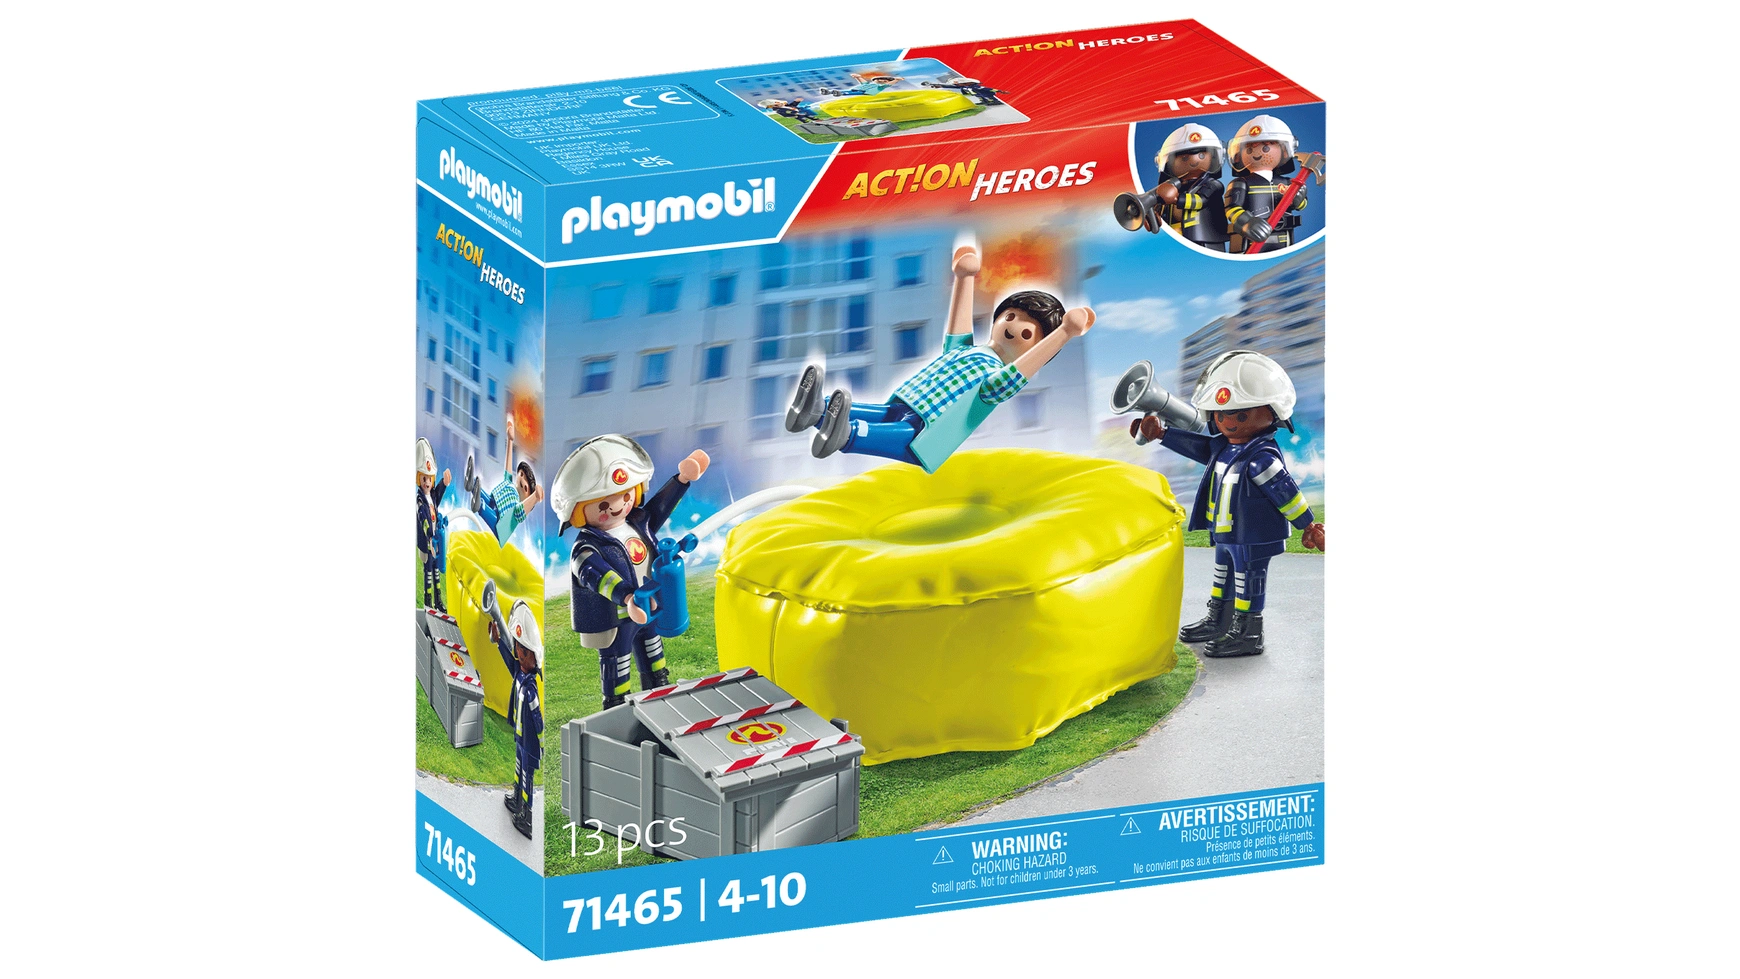 Action heroes пожарные на воздушных подушках Playmobil